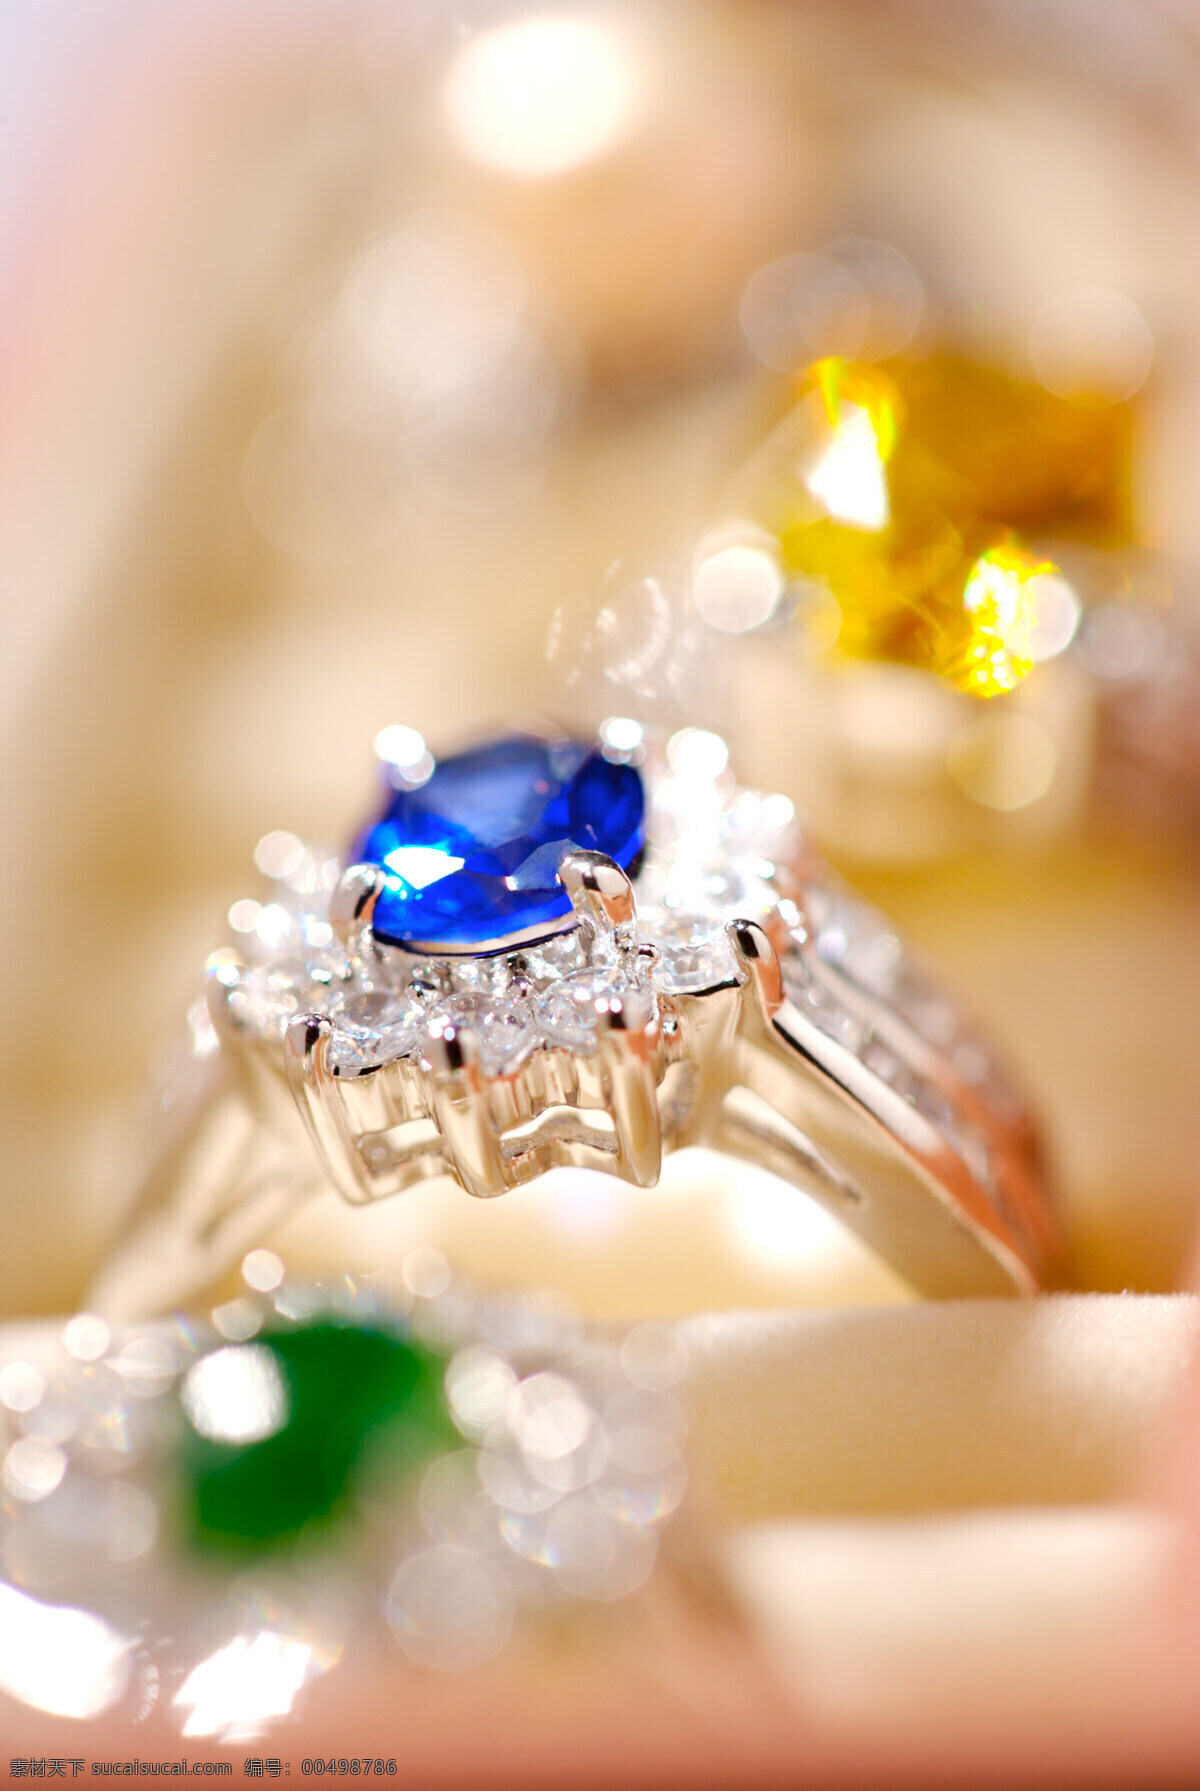 珠宝 宝石 蓝宝石 名品 奢侈品 生活百科 生活素材 钻戒 珠宝65 淘宝素材 其他淘宝素材